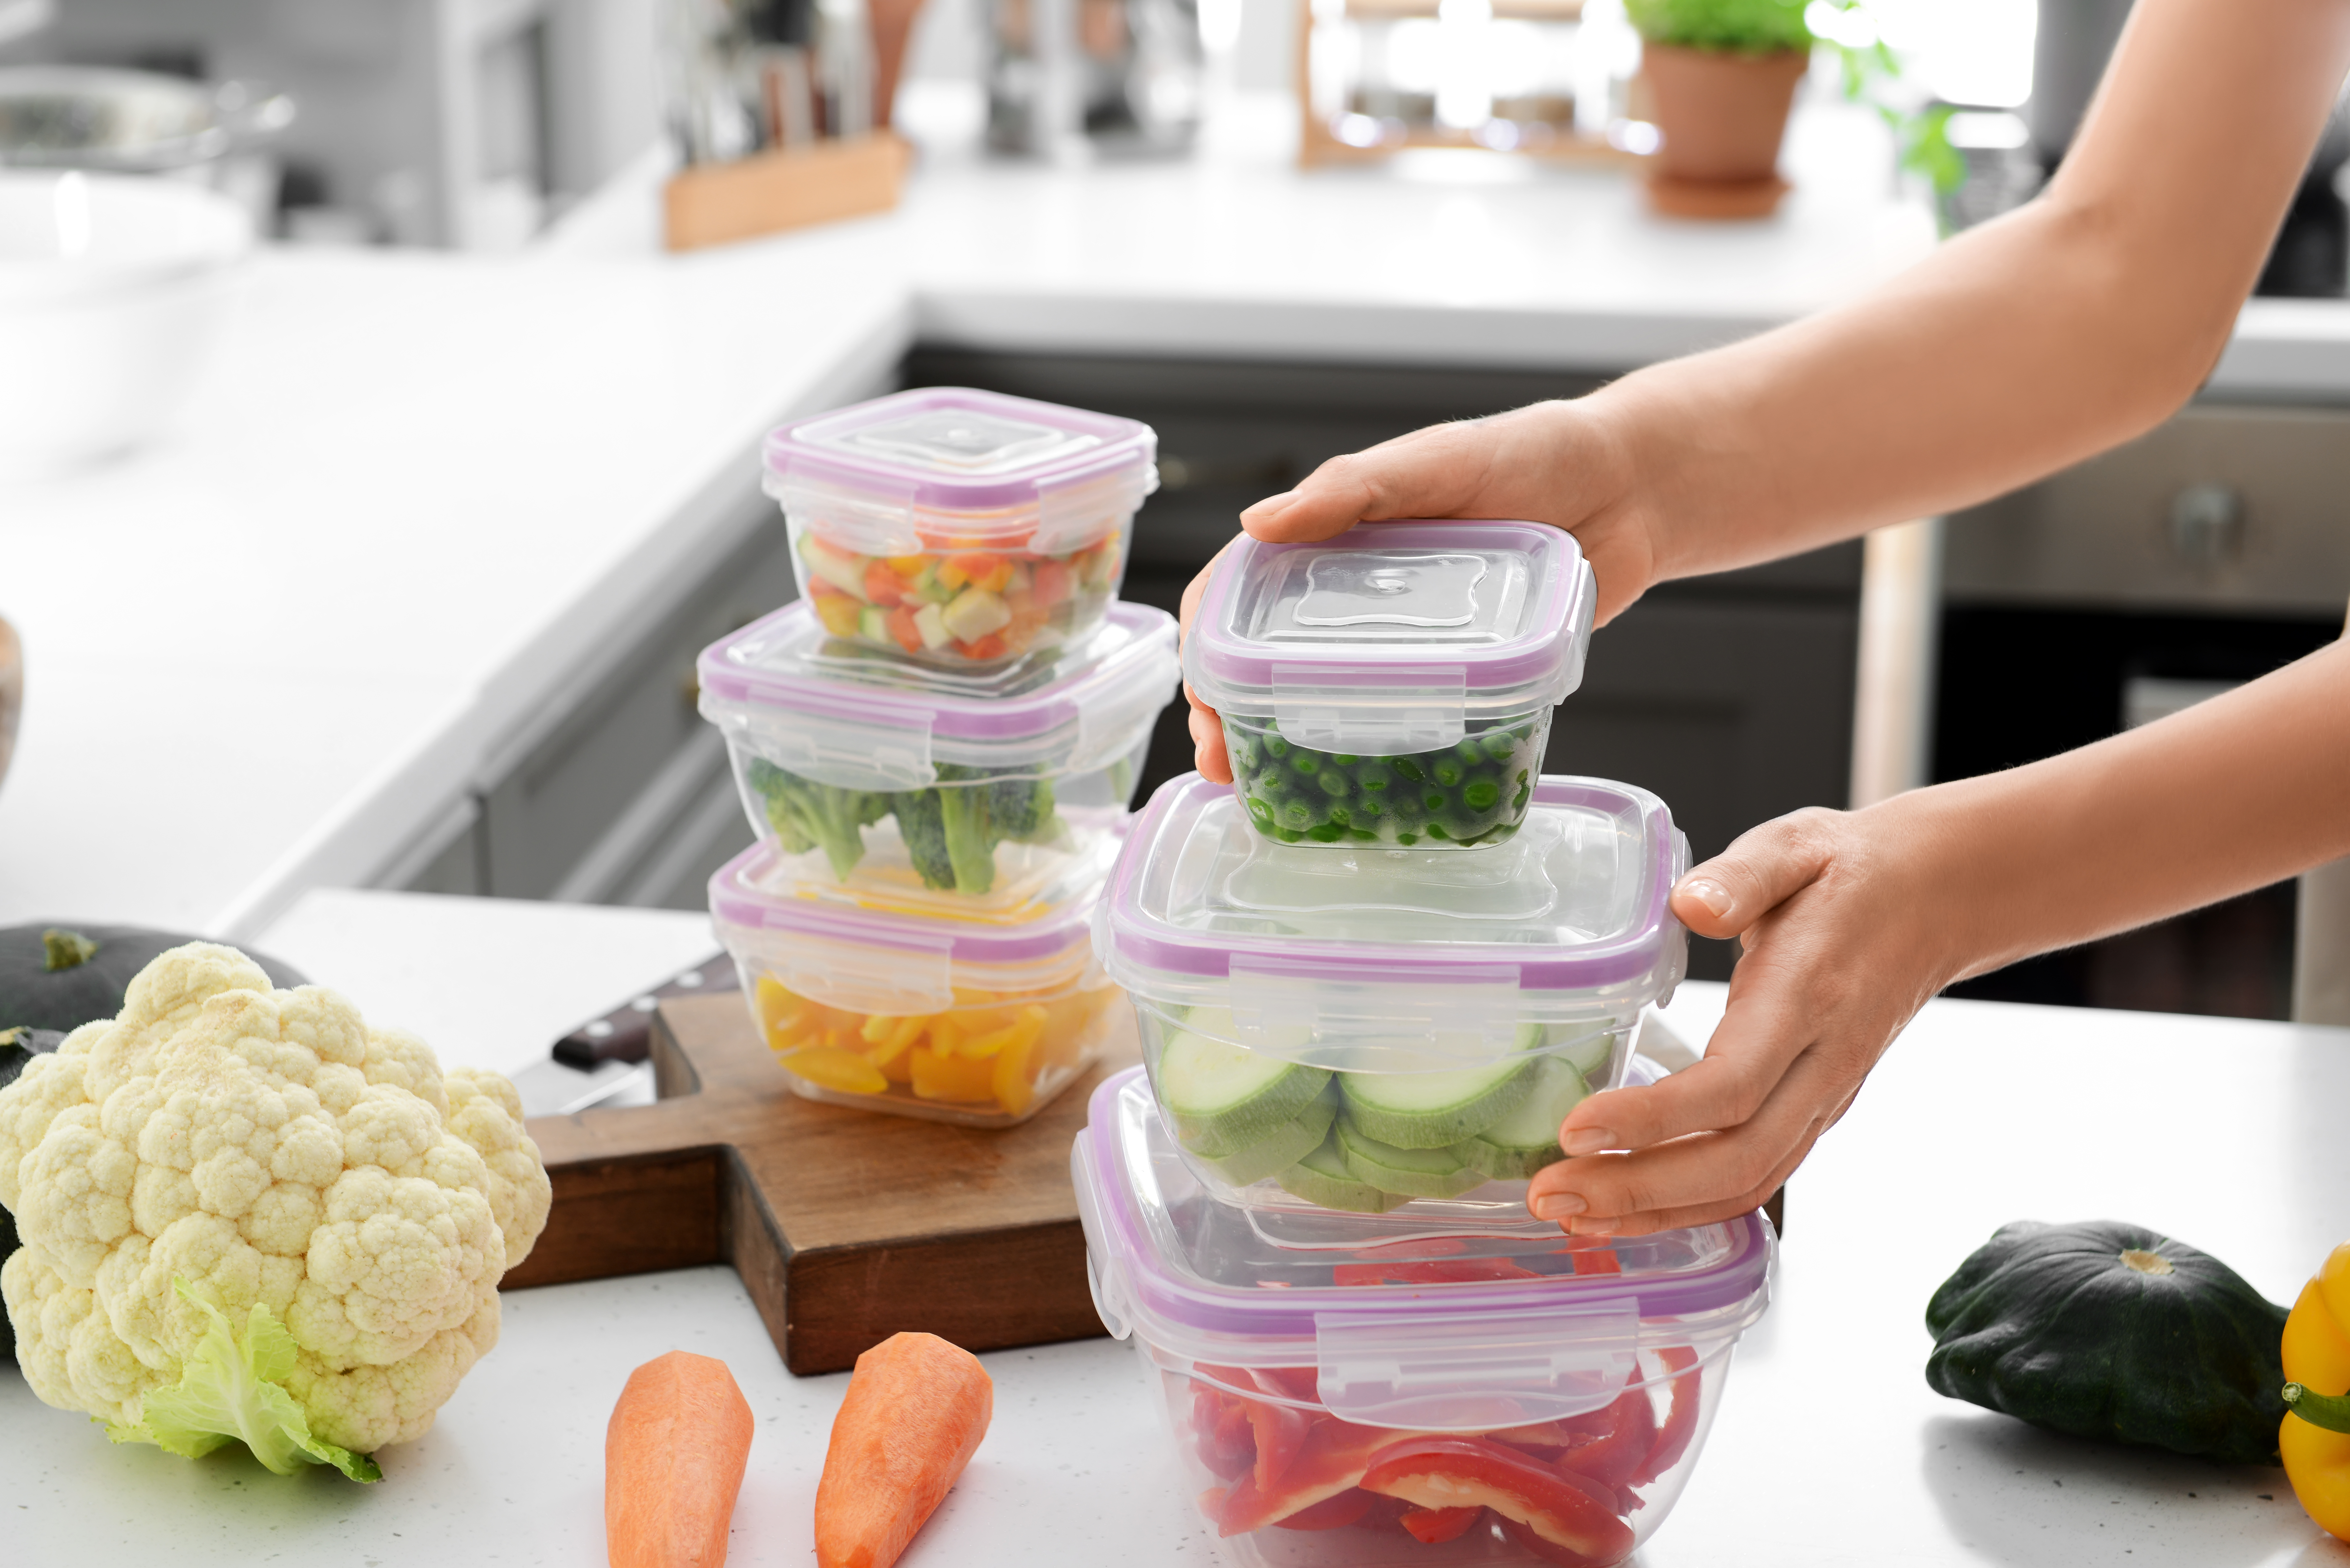 Frau hält einen Stapel Plastikbehälter mit frischem Gemüse zum Einfrieren | Quelle: Shutterstock